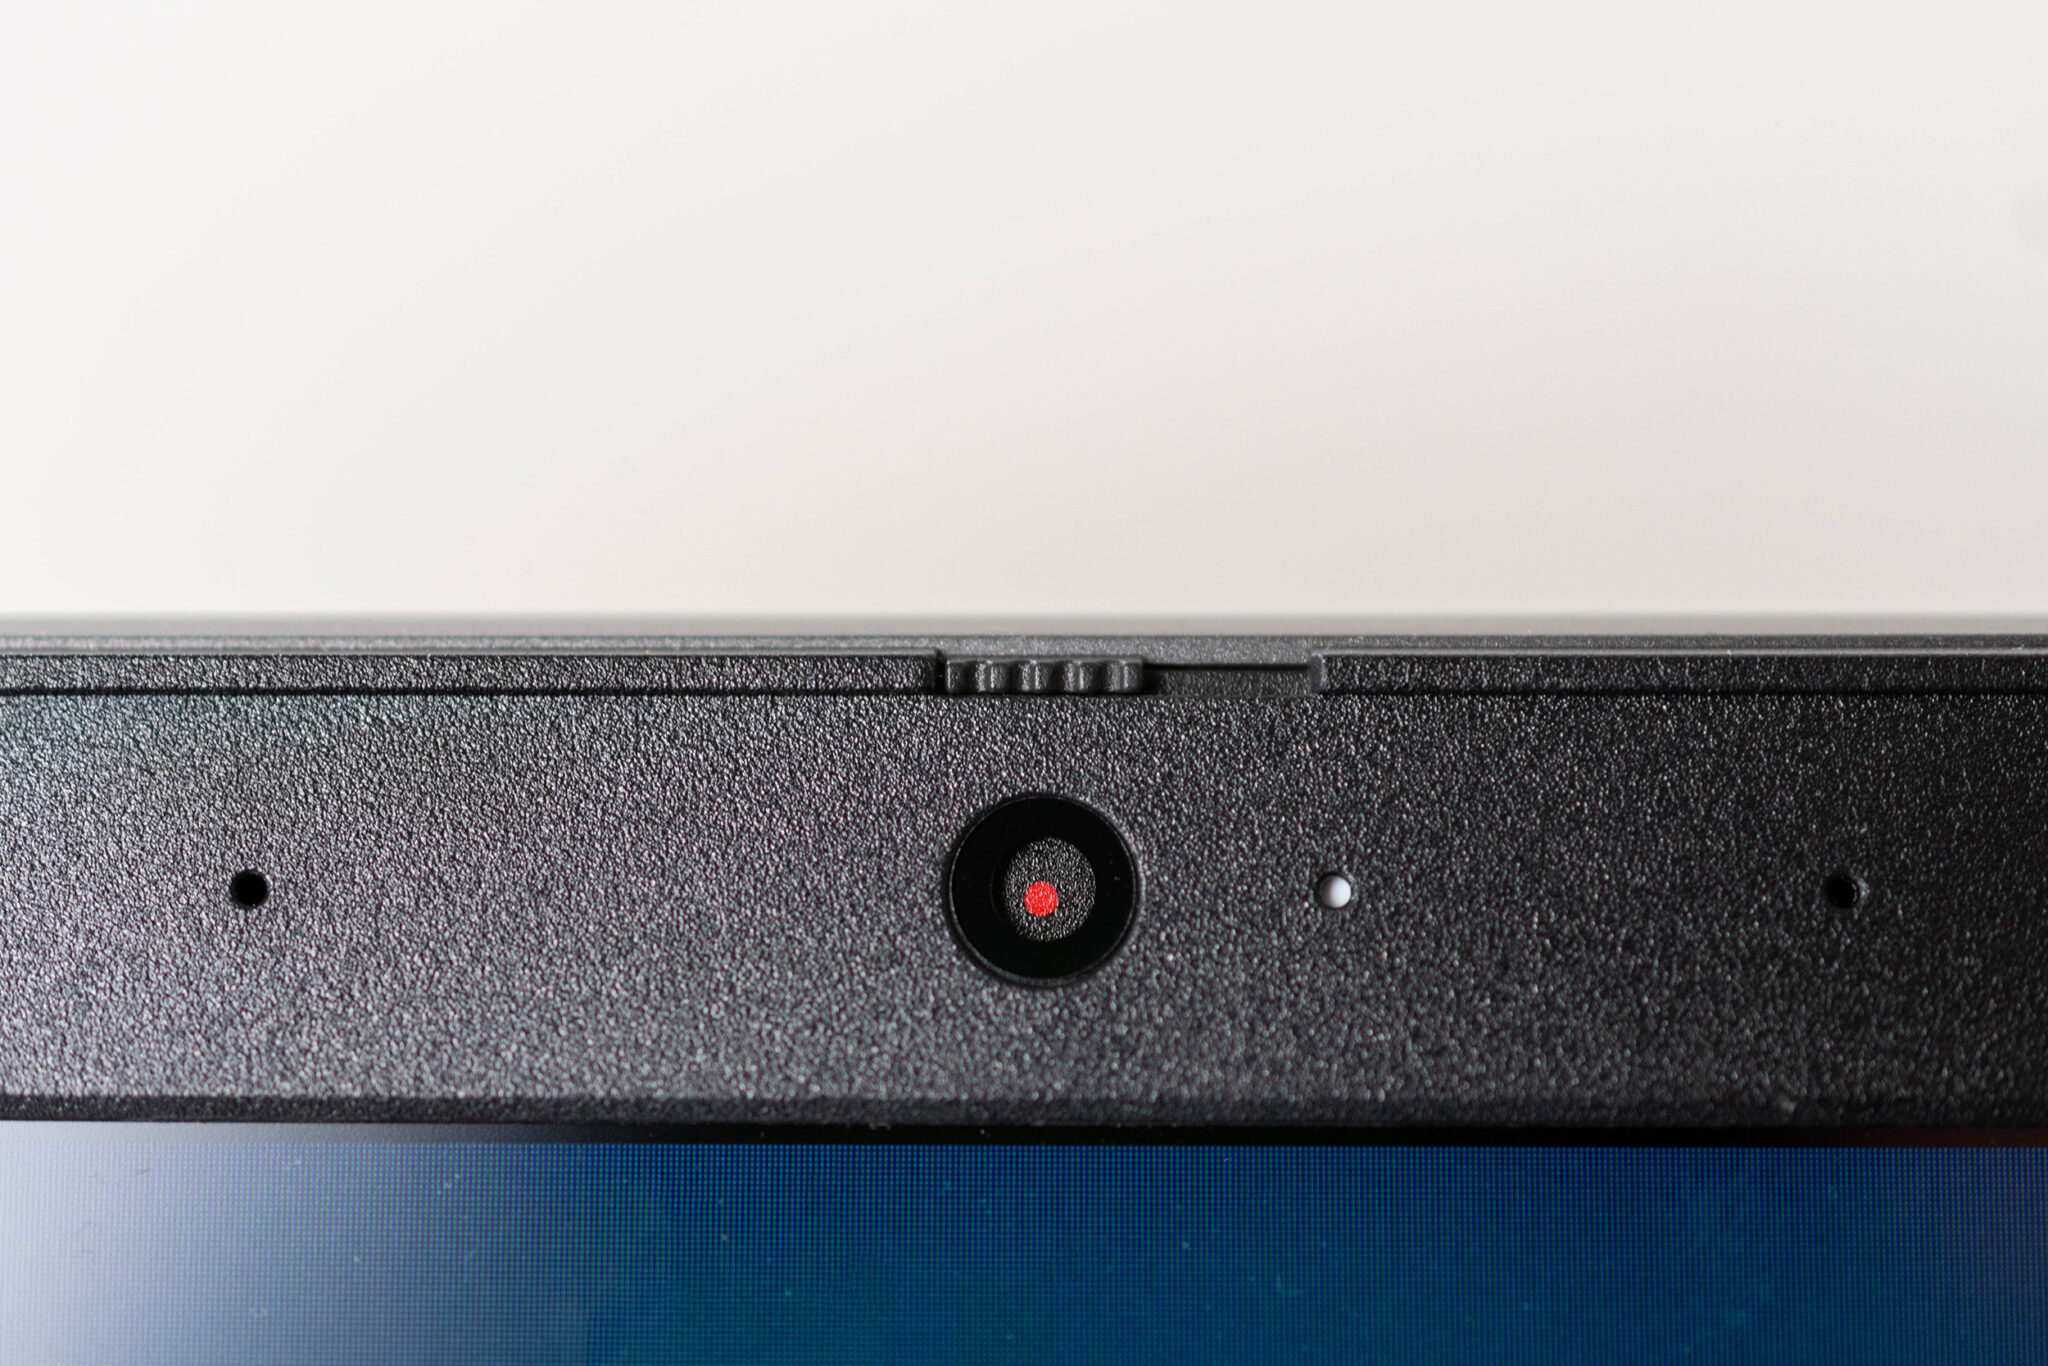 Die Webcam des Lenovo V17 lässt sich mit einem Schiebregler verdecken